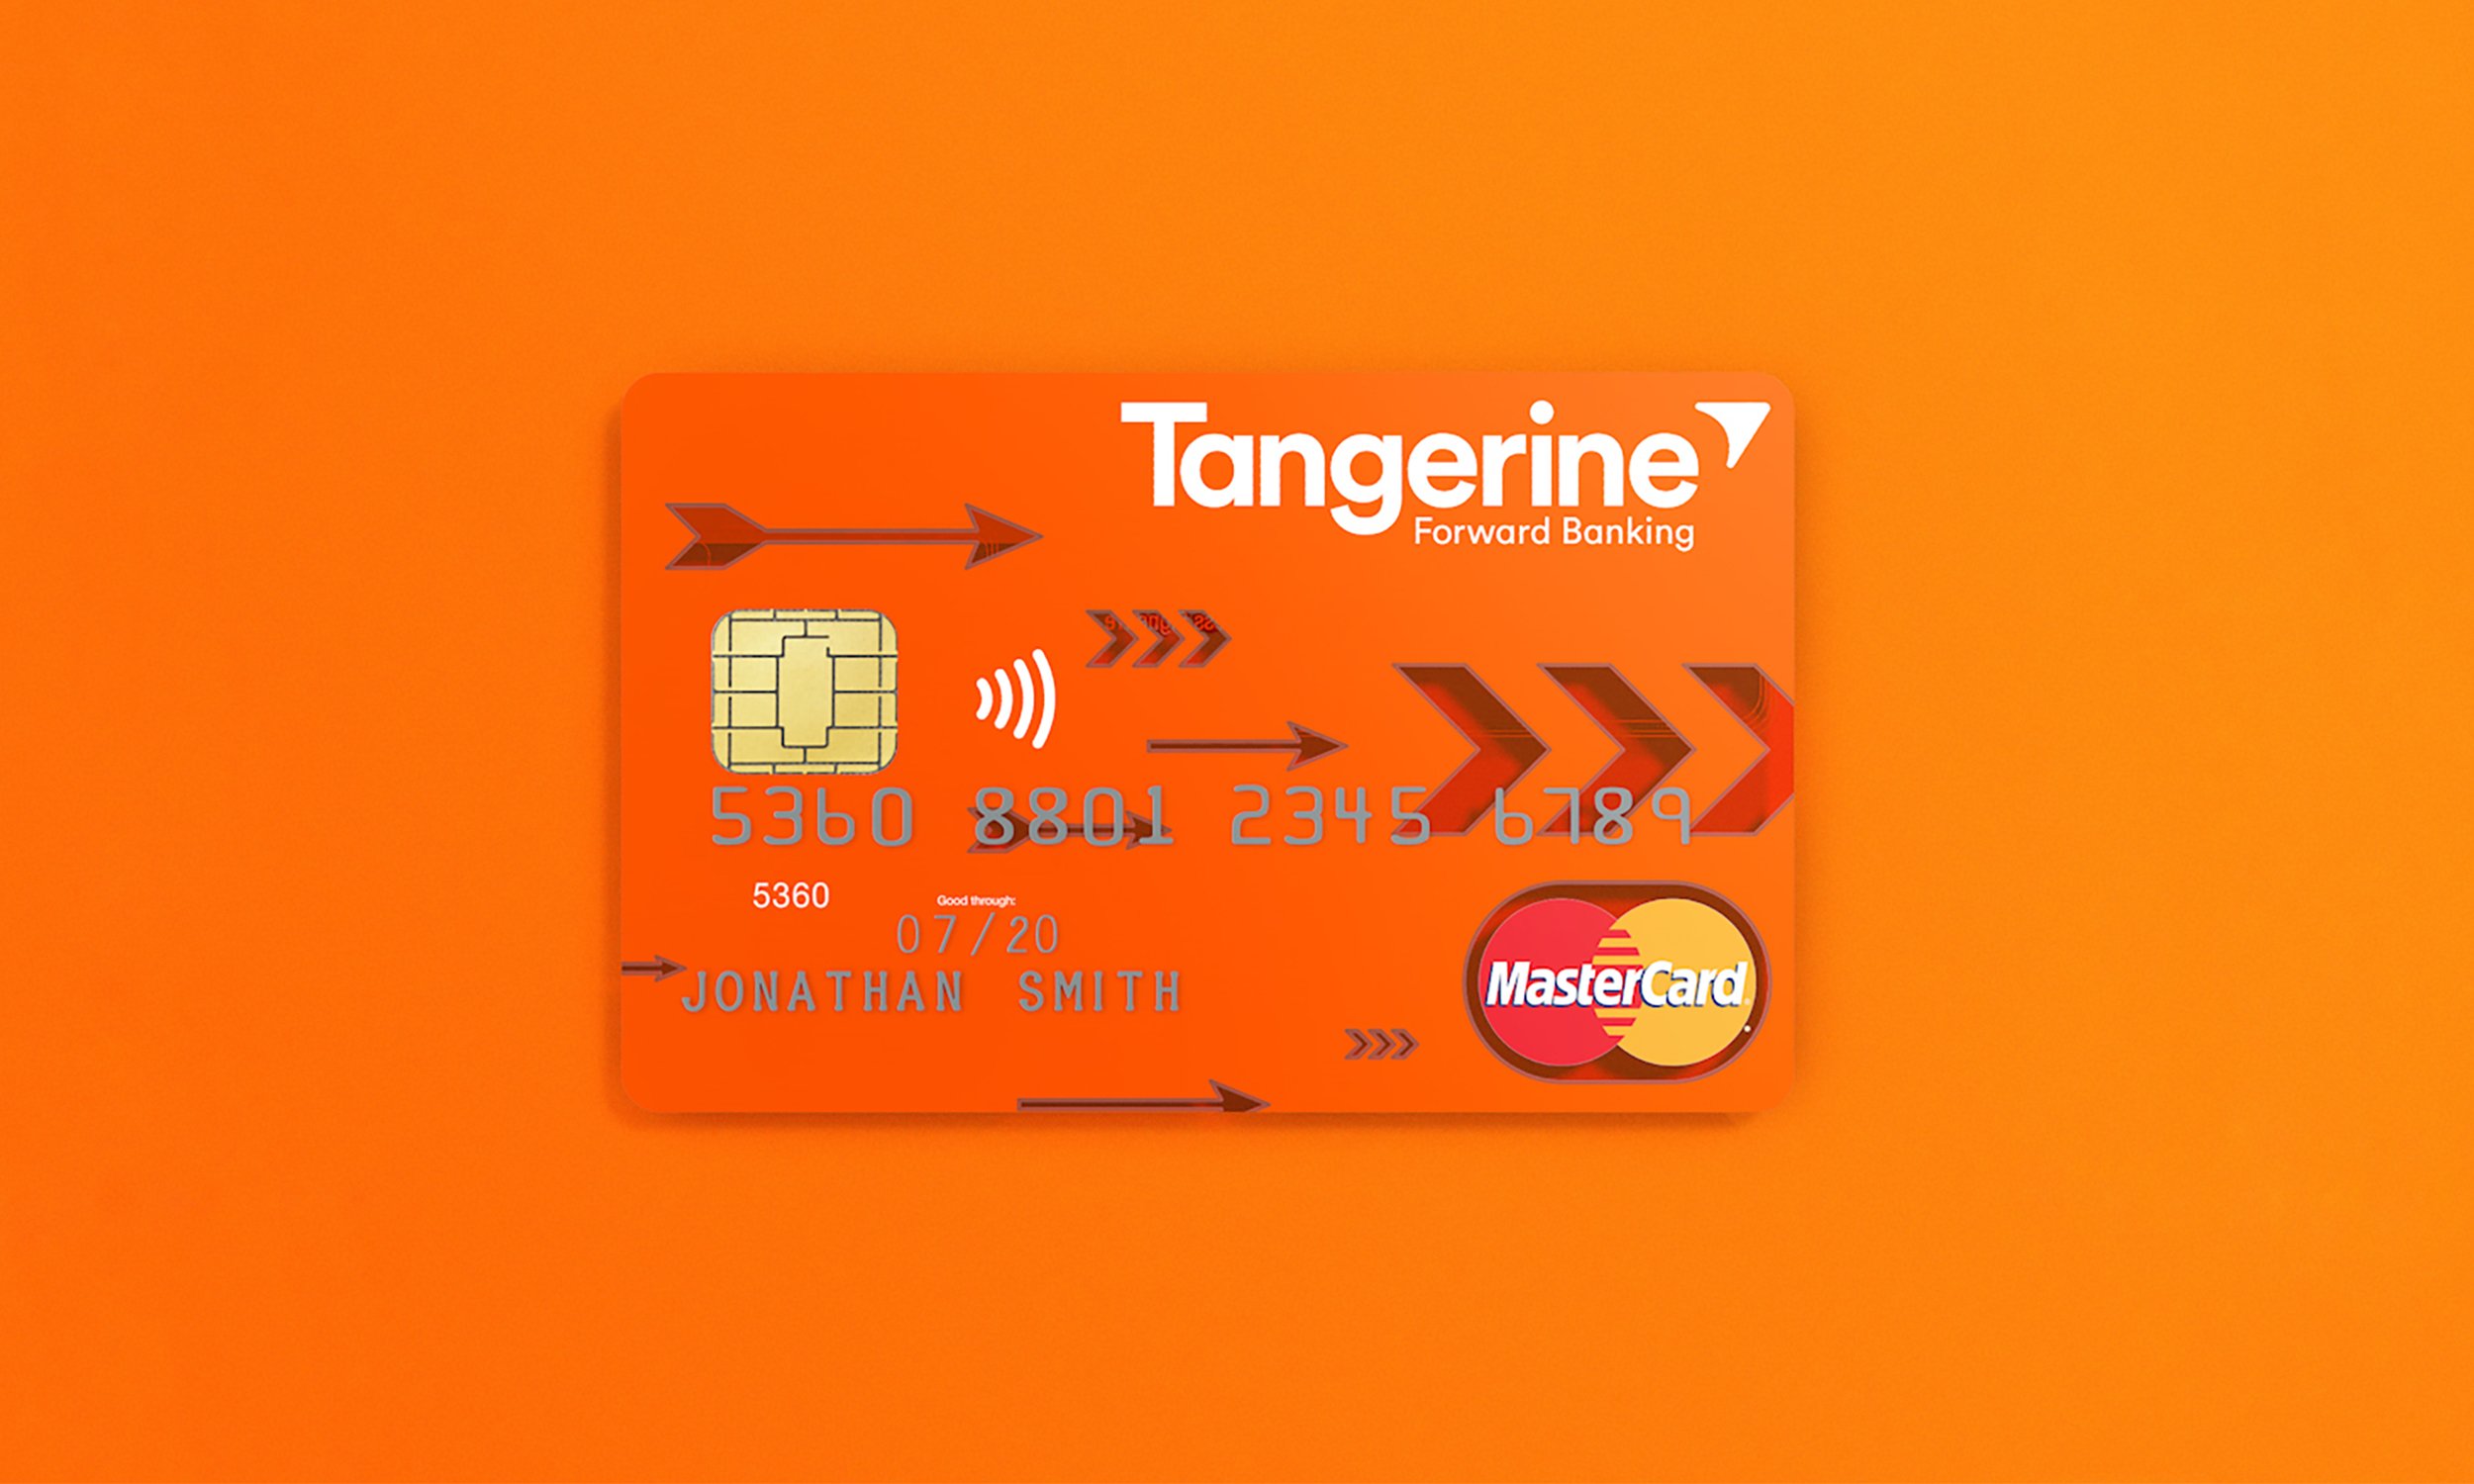 Tangerine Credit Card — Nicole Gueldenpfennig Design